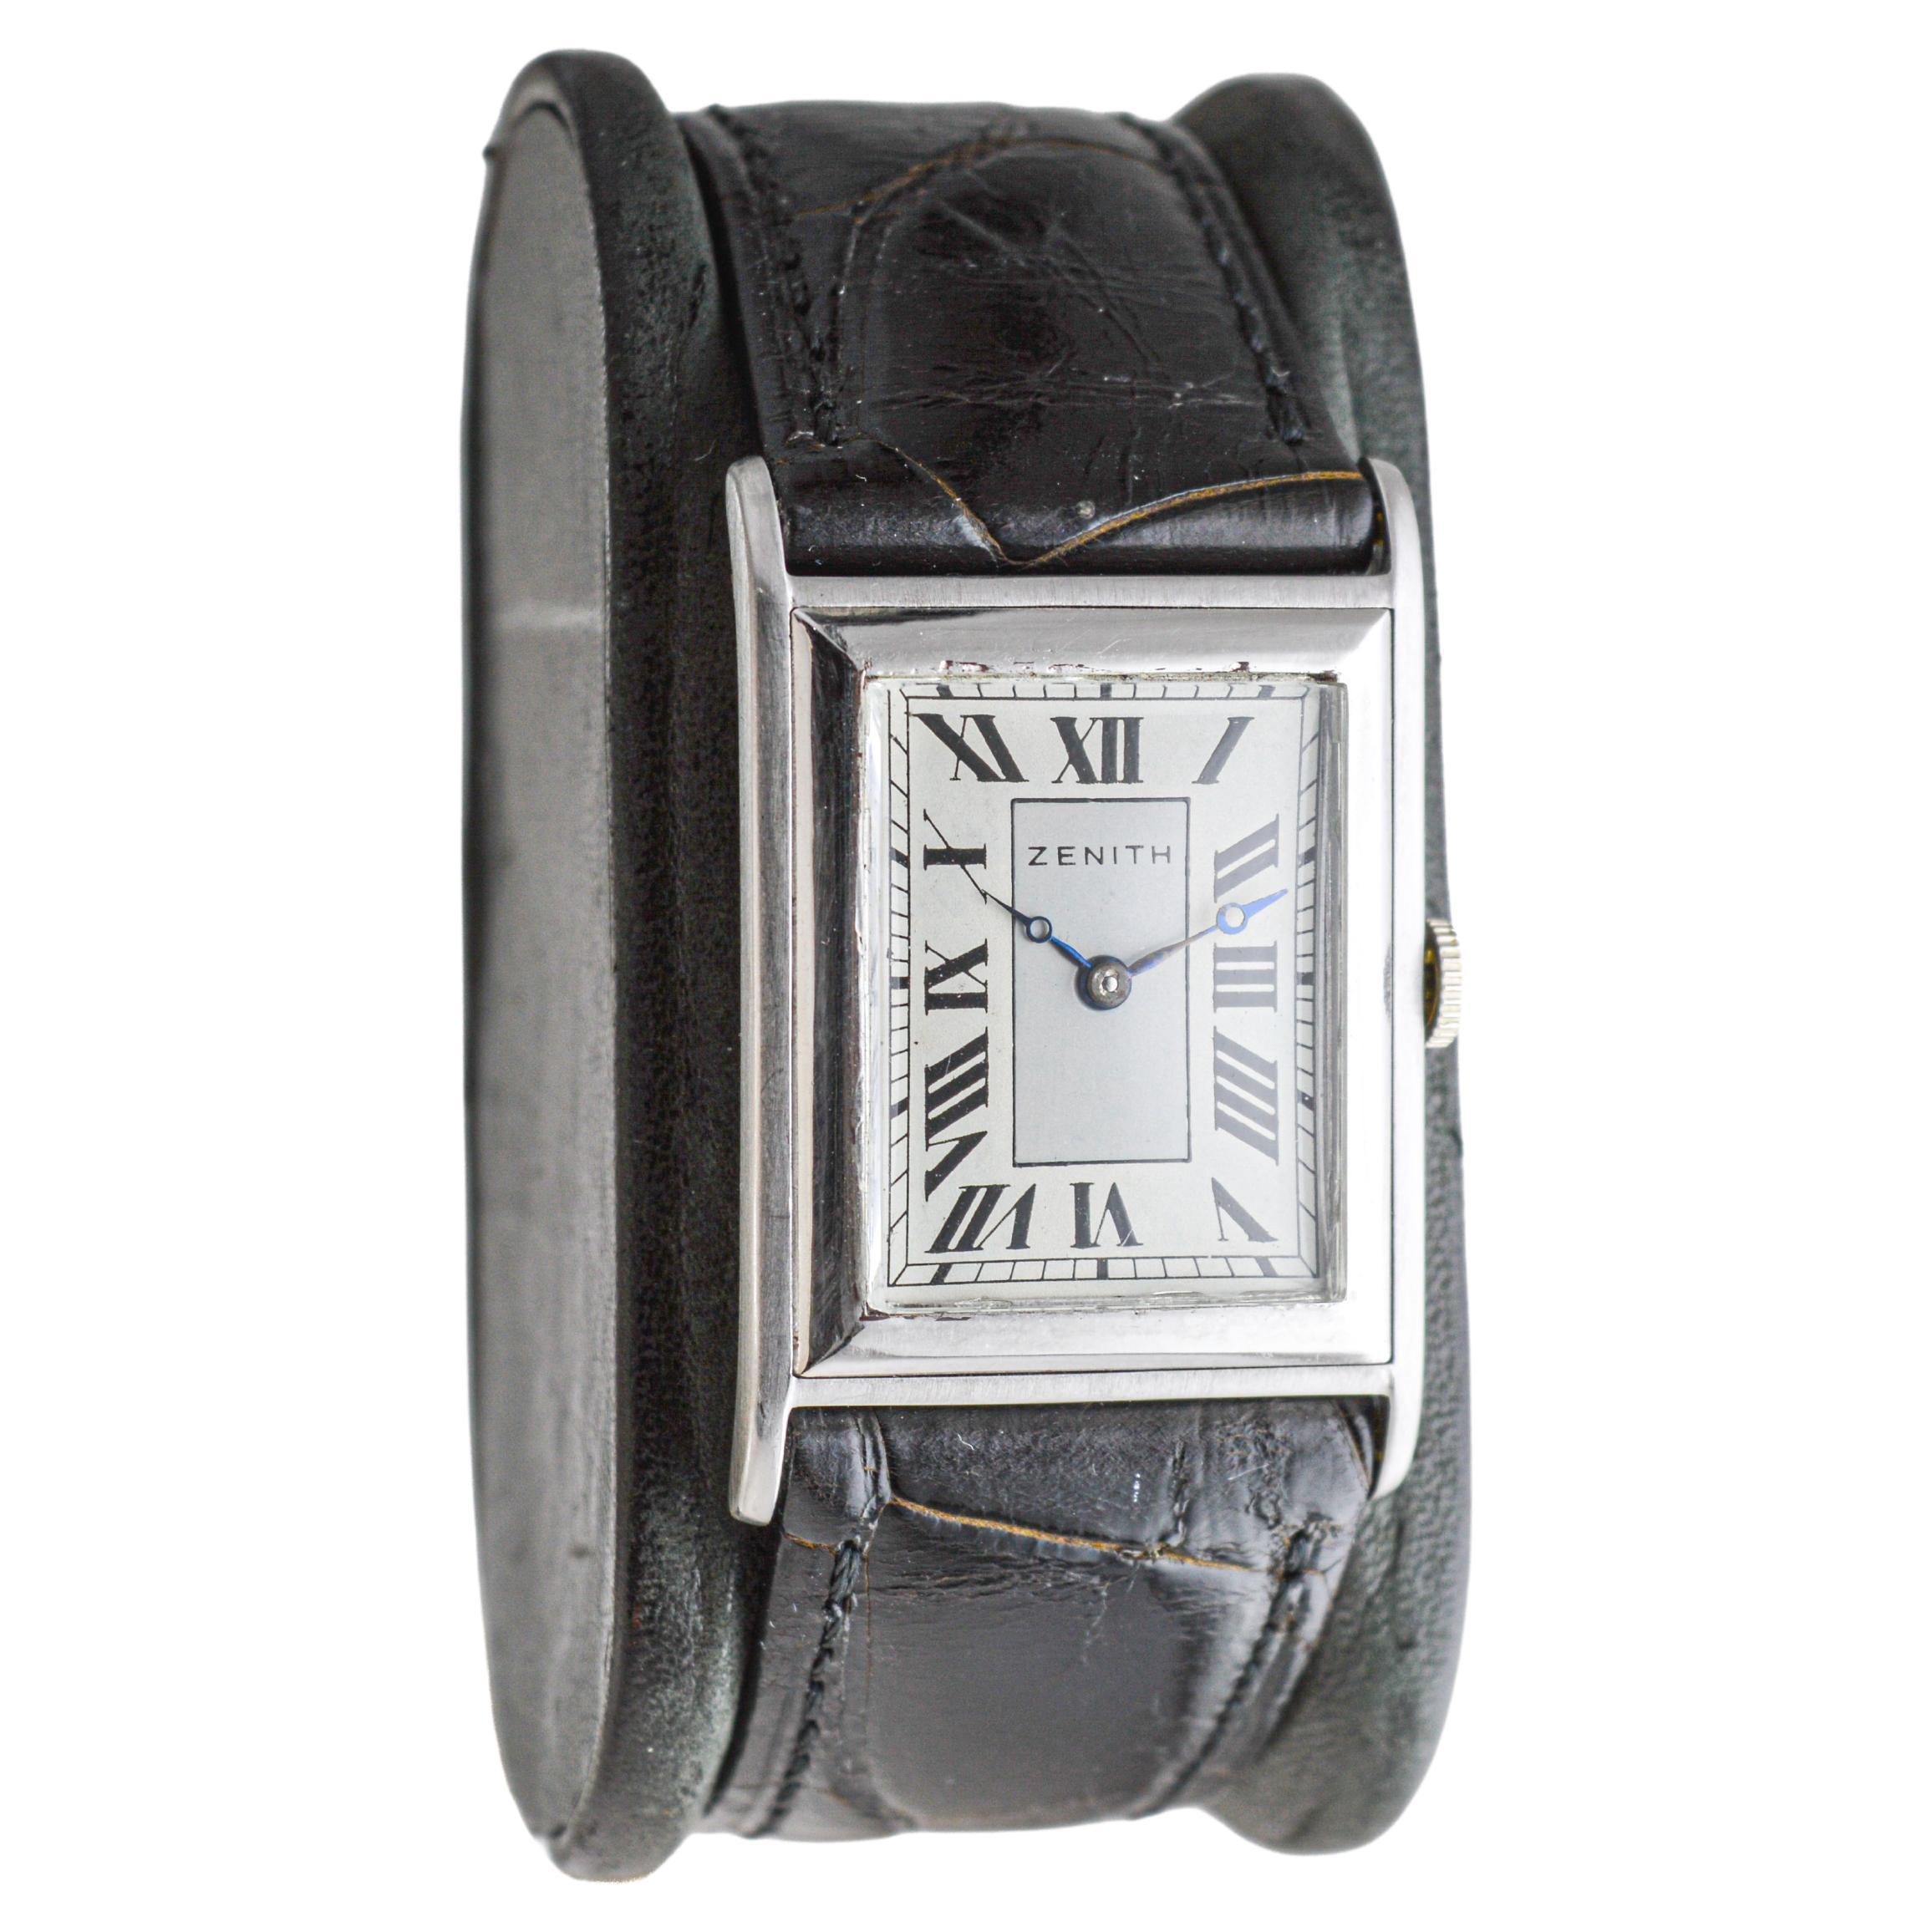 FABRIK / HAUS: Zenith Watch Company
STIL / REFERENZ: Art Deco / Panzer 
METALL / MATERIAL: 18kt Massiv Weißgold
CIRCA / JAHR: 1930er Jahre
ABMESSUNGEN / GRÖSSE: Länge 38mm X Breite 25mm
UHRWERK / KALIBER: Handaufzug / 15 Jewels / Kal.888
ZIFFERBLATT